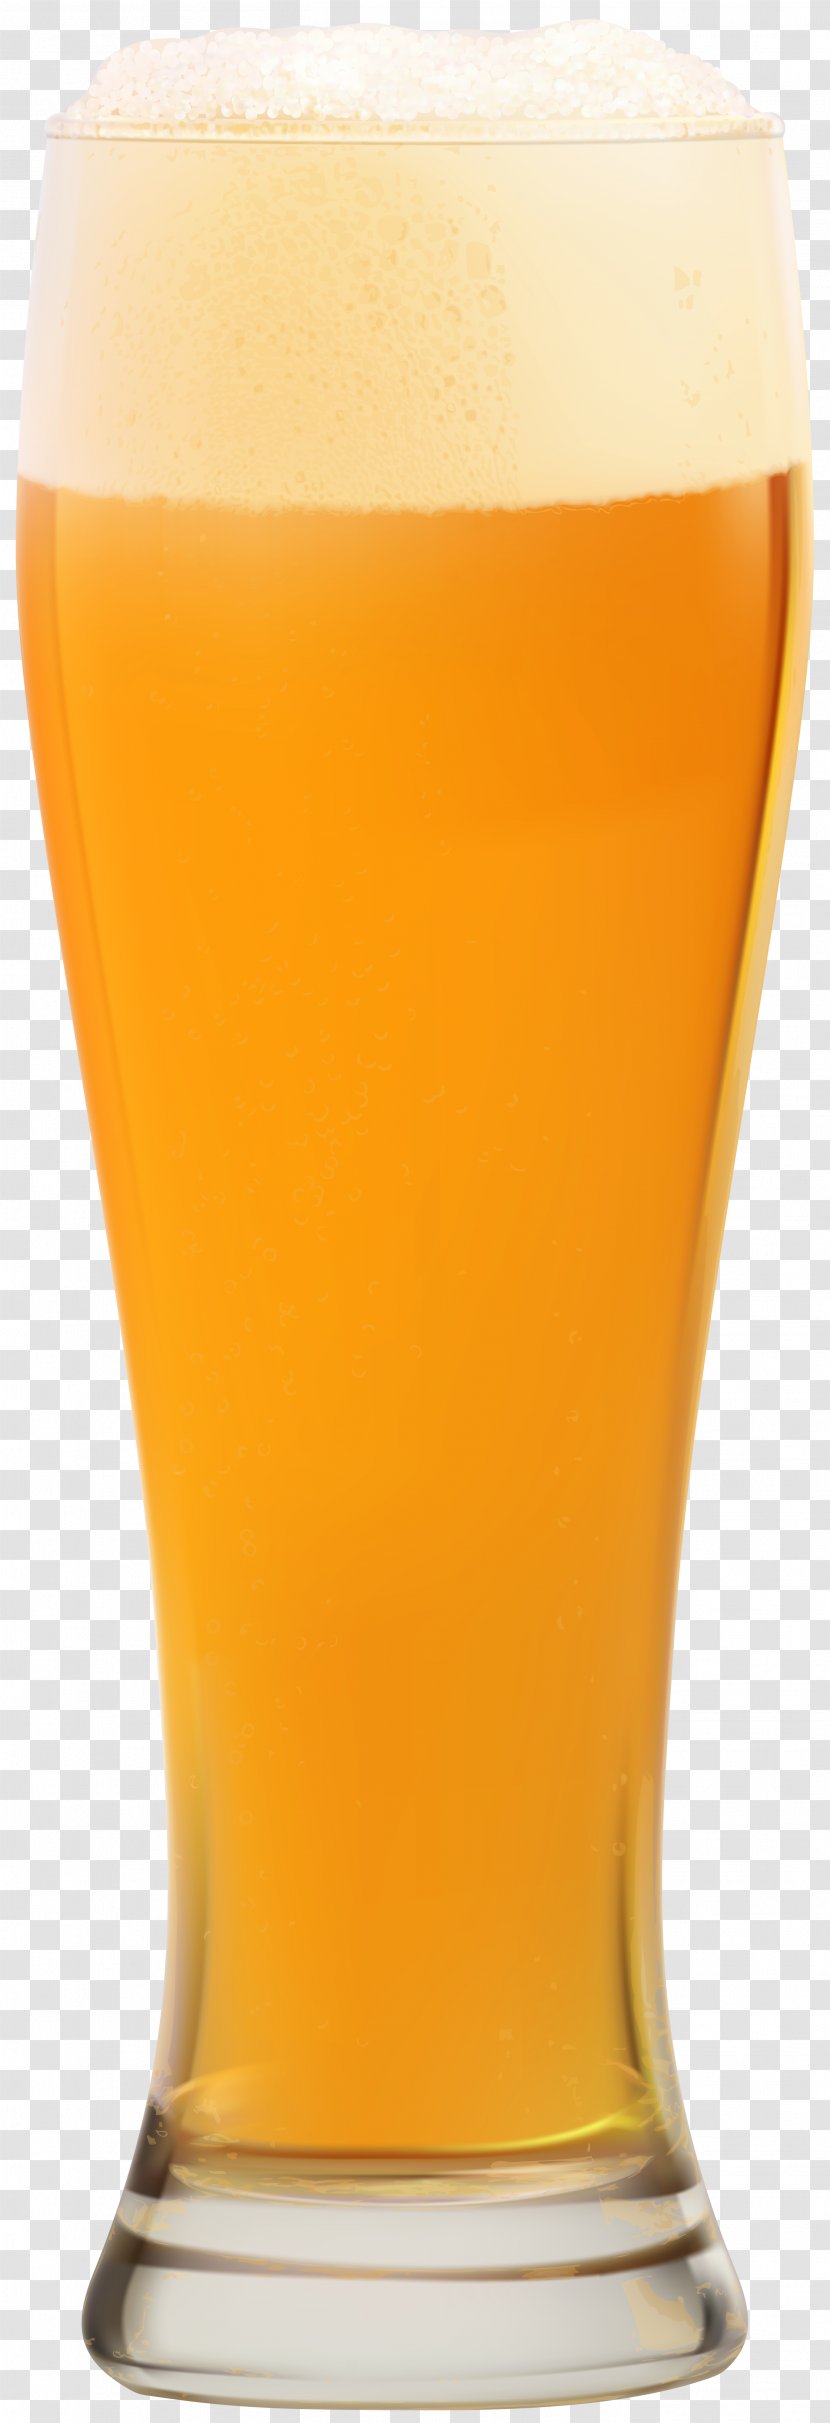 Image File Formats Lossless Compression - Orange Juice - Beer Clip Art Transparent PNG